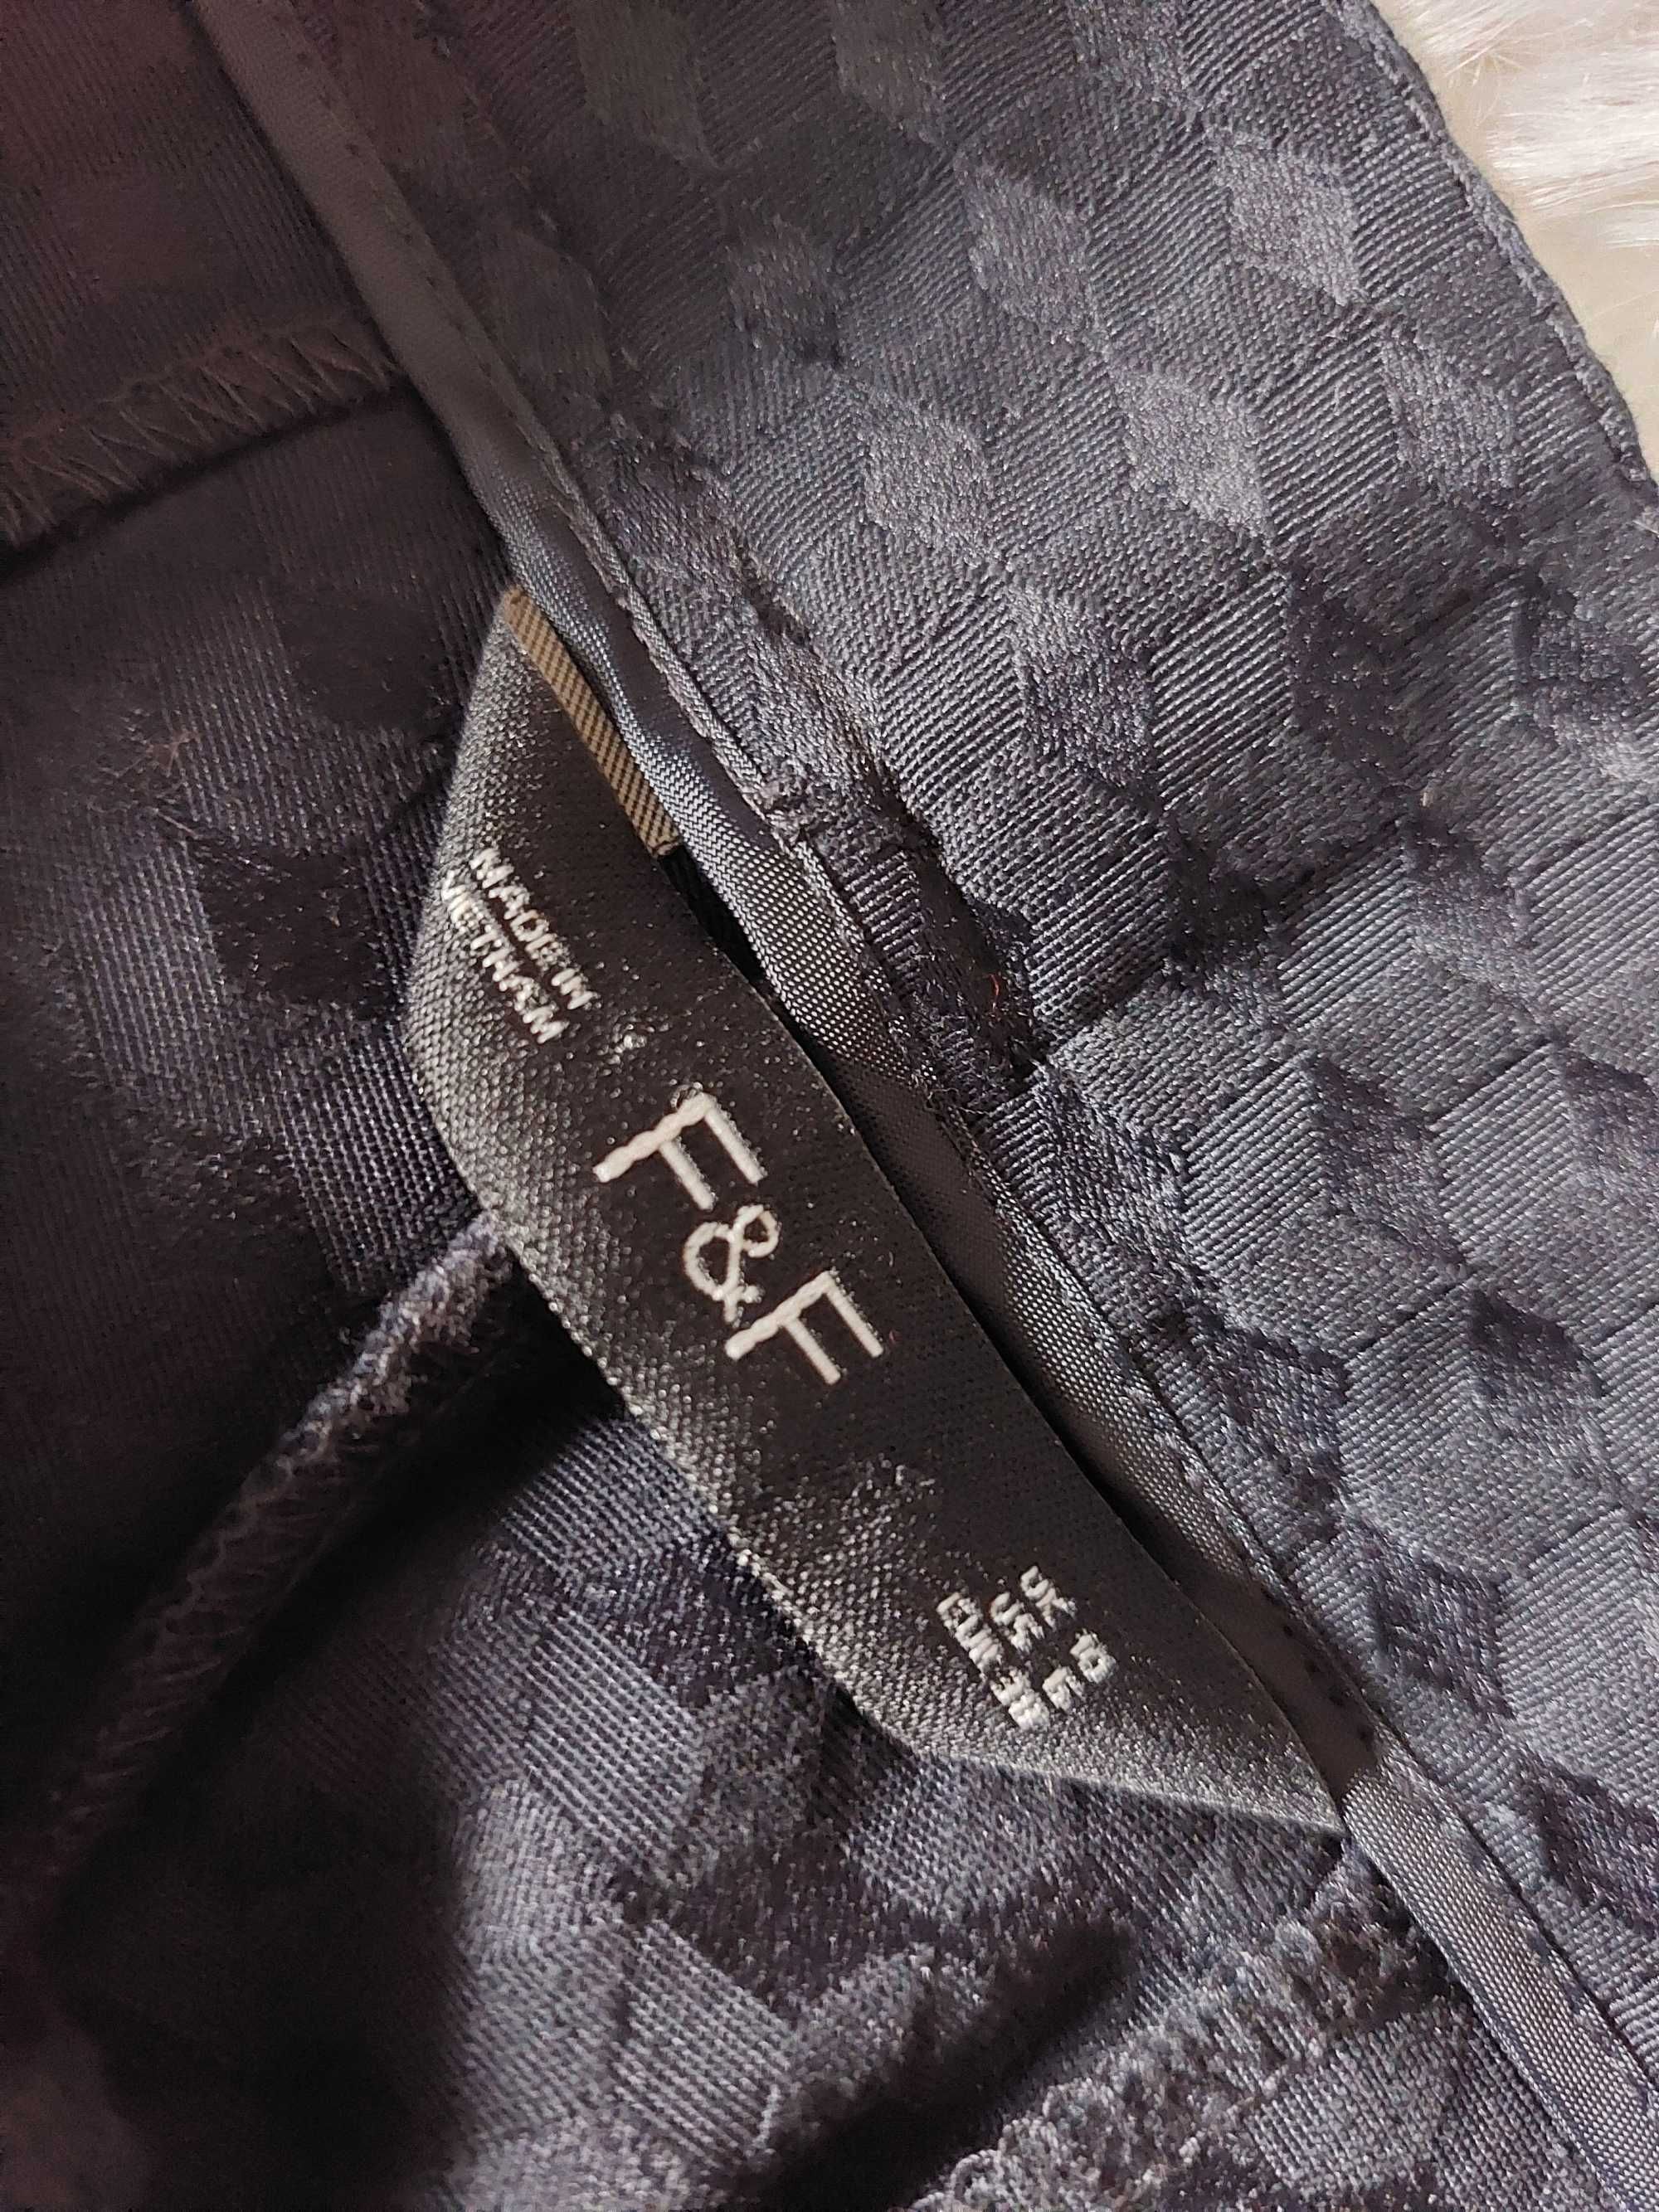 Ff spodnie granatowe wzór w romby m l xl eleganckie garniturowe wzór